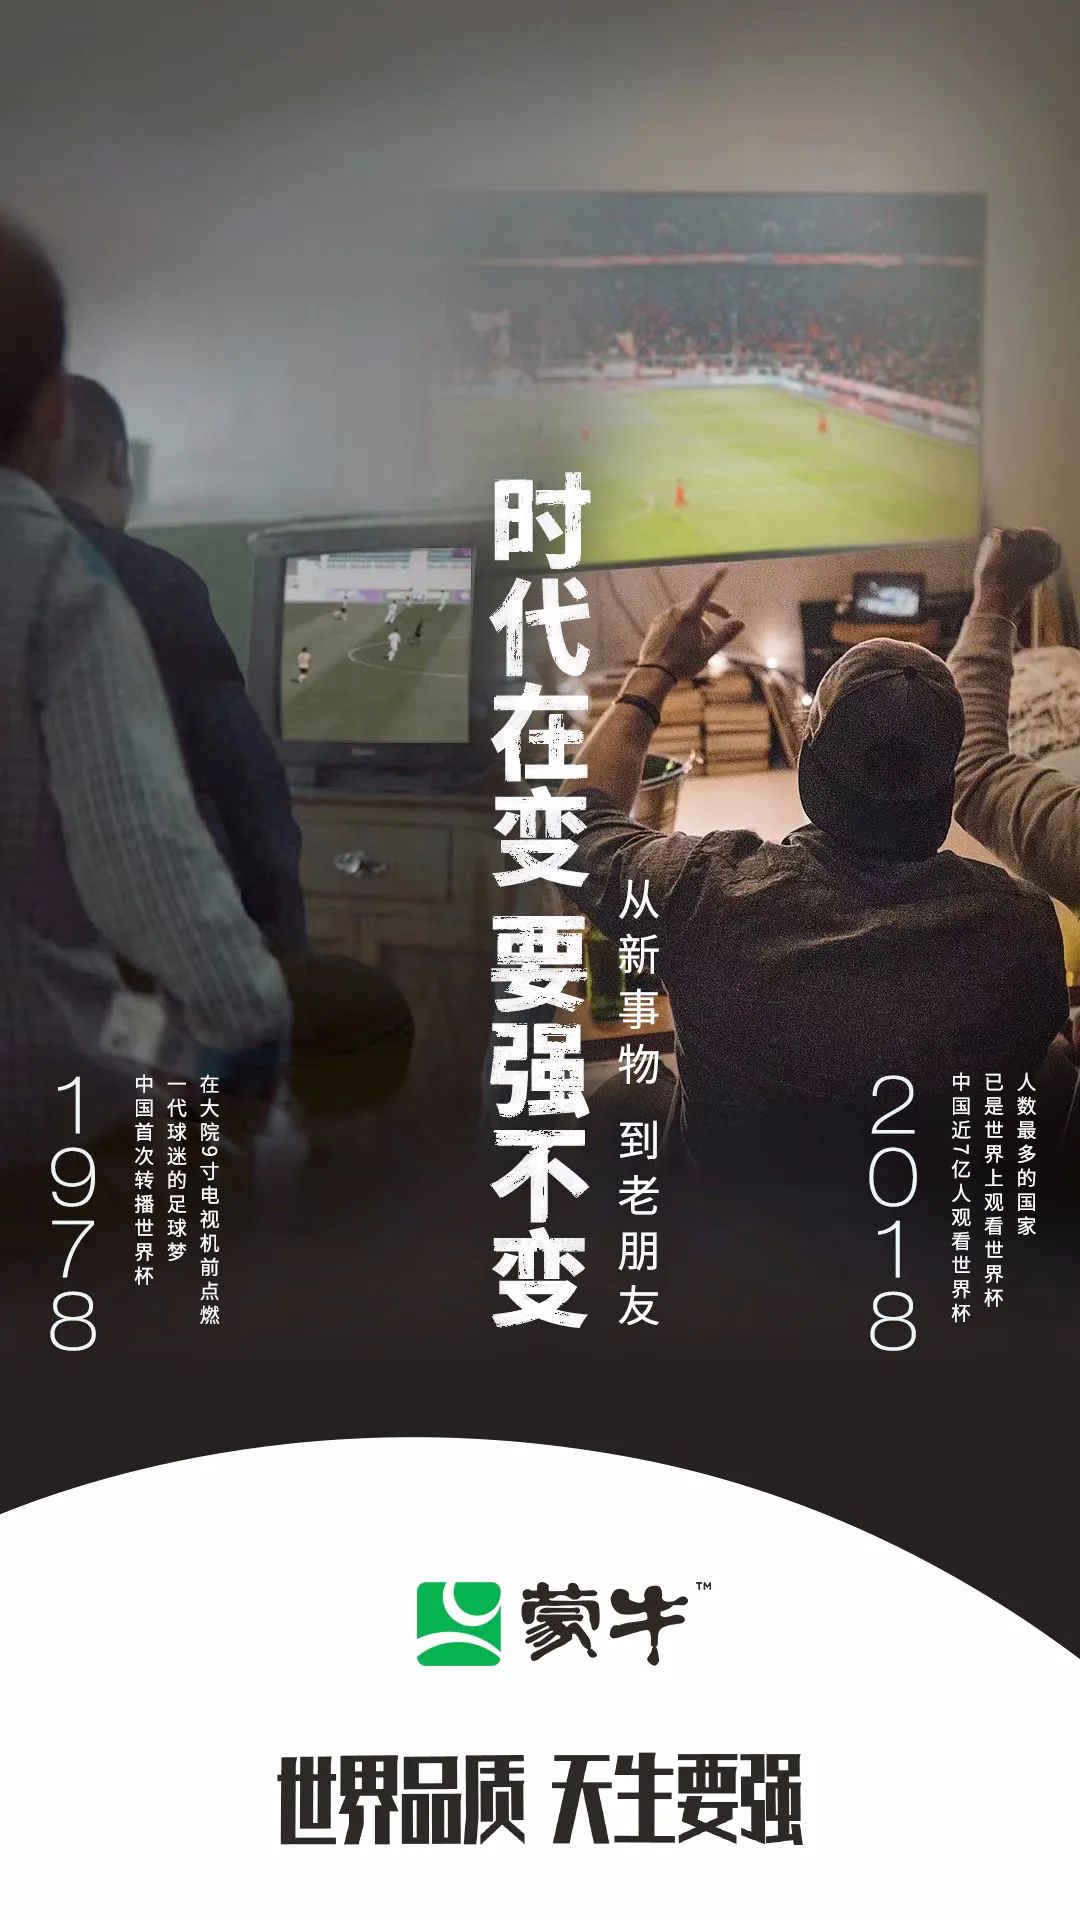 世界杯营销再造中国声浪，强到犇向世界！